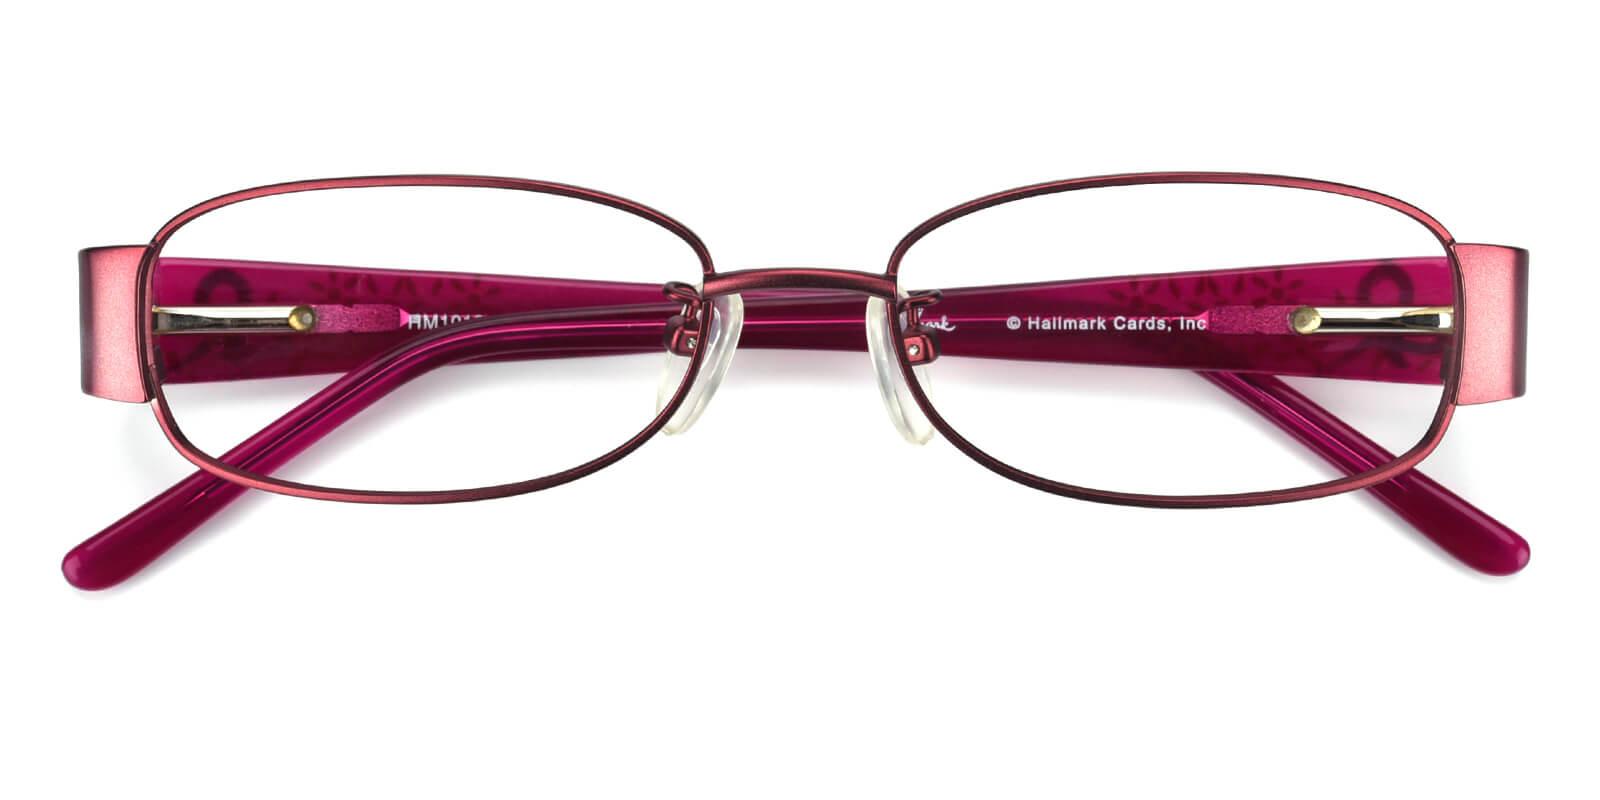 Charlotte Eyeglasses - Cheap Prescription Glasses Online